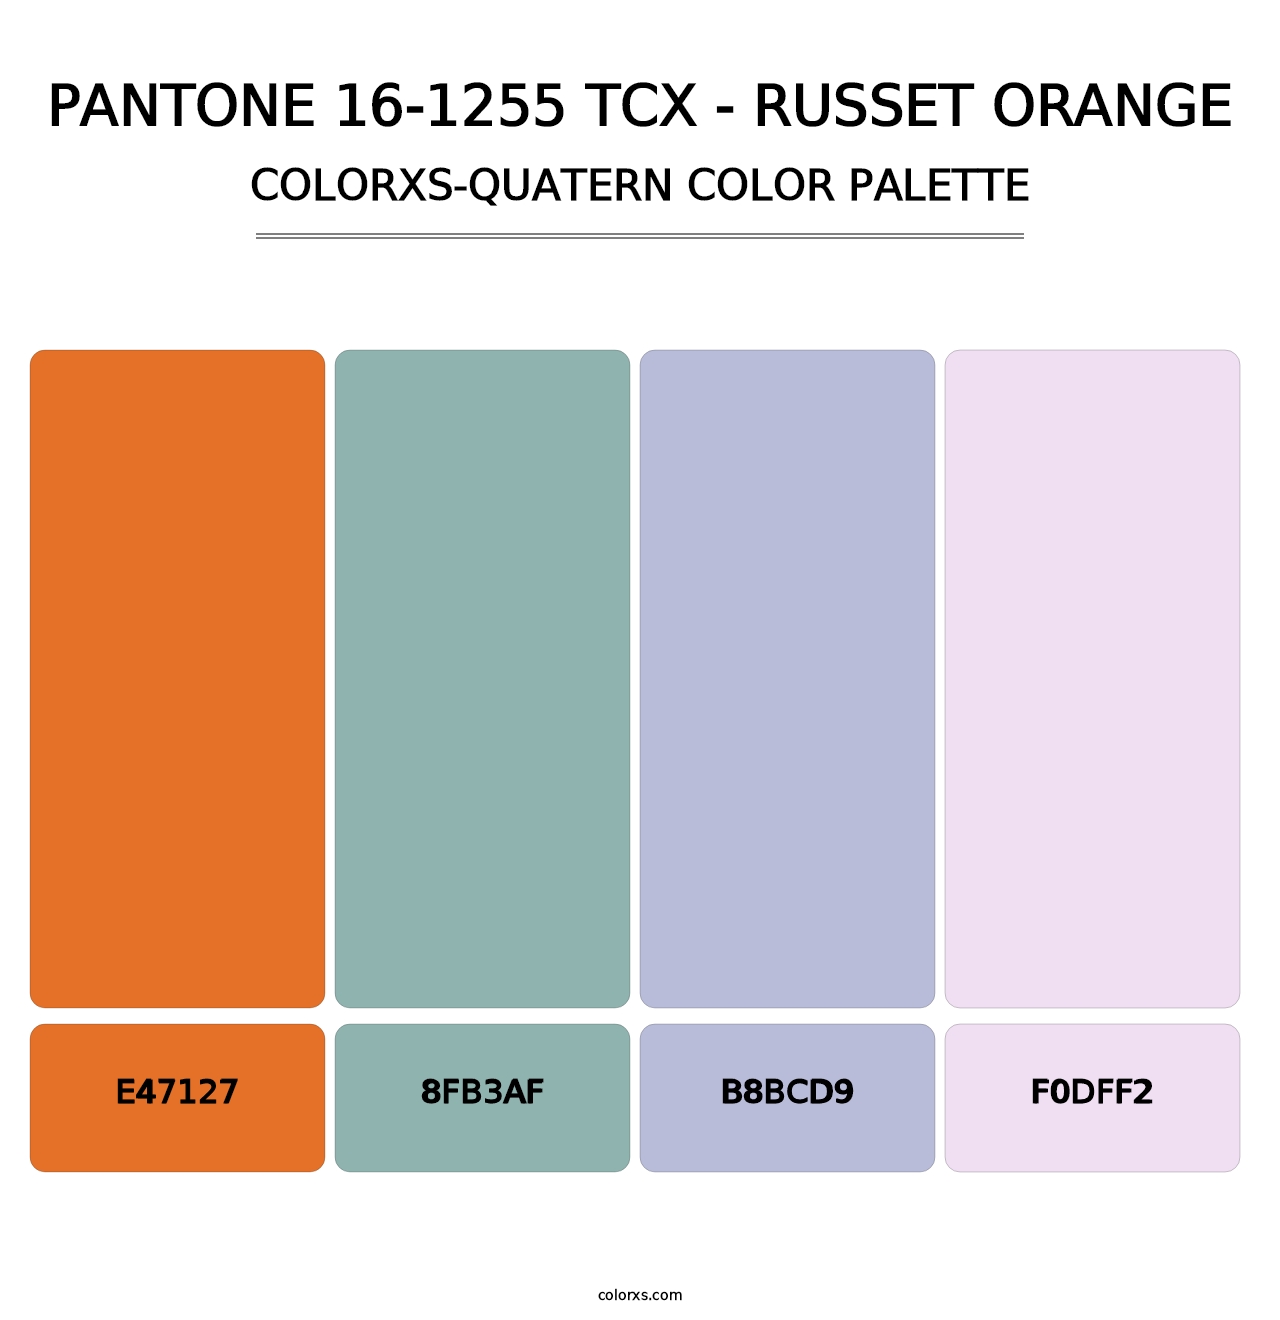 PANTONE 16-1255 TCX - Russet Orange - Colorxs Quatern Palette